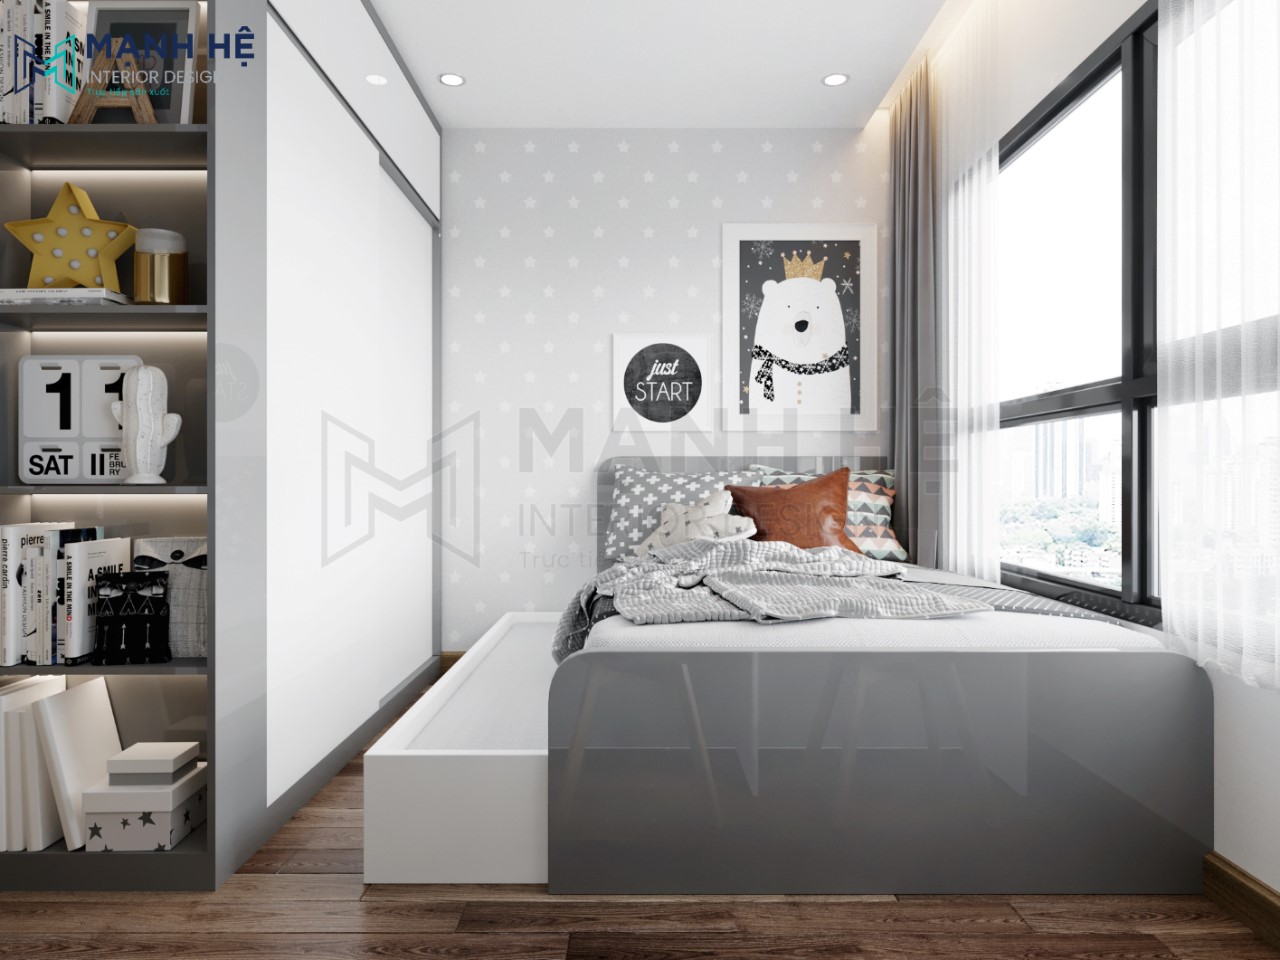 Những lưu ý khi thiết kế phòng ngủ không gian mở - WEDO - Công ty Thiết kế  Thi công xây dựng chuyên nghiệp hàng đầu Việt Nam